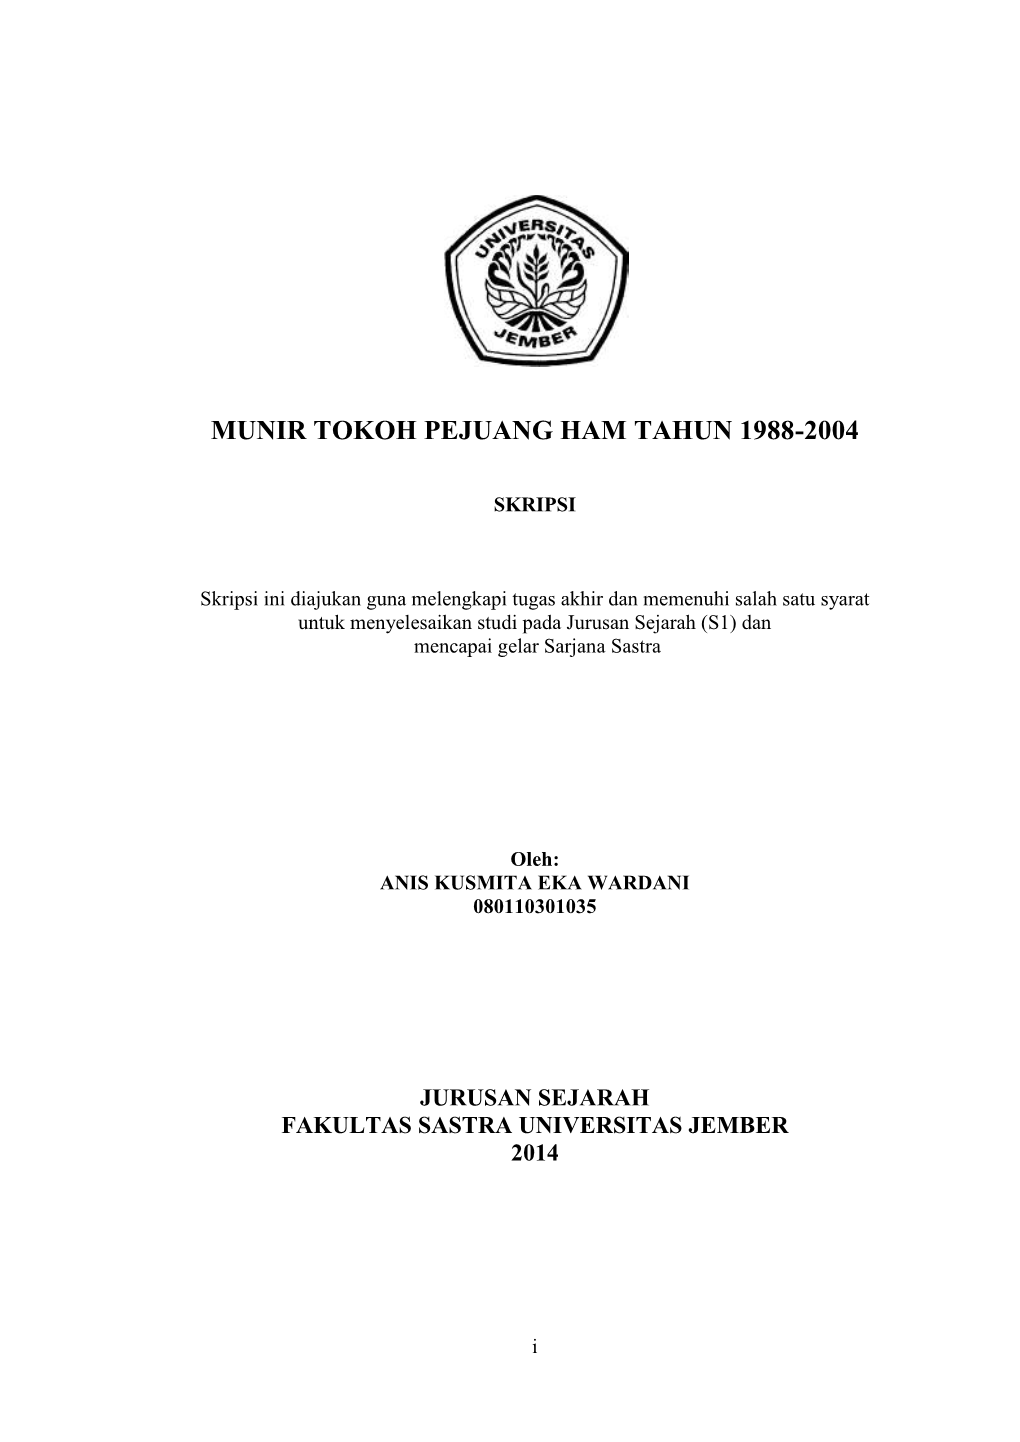 Munir Tokoh Pejuang Ham Tahun 1988-2004